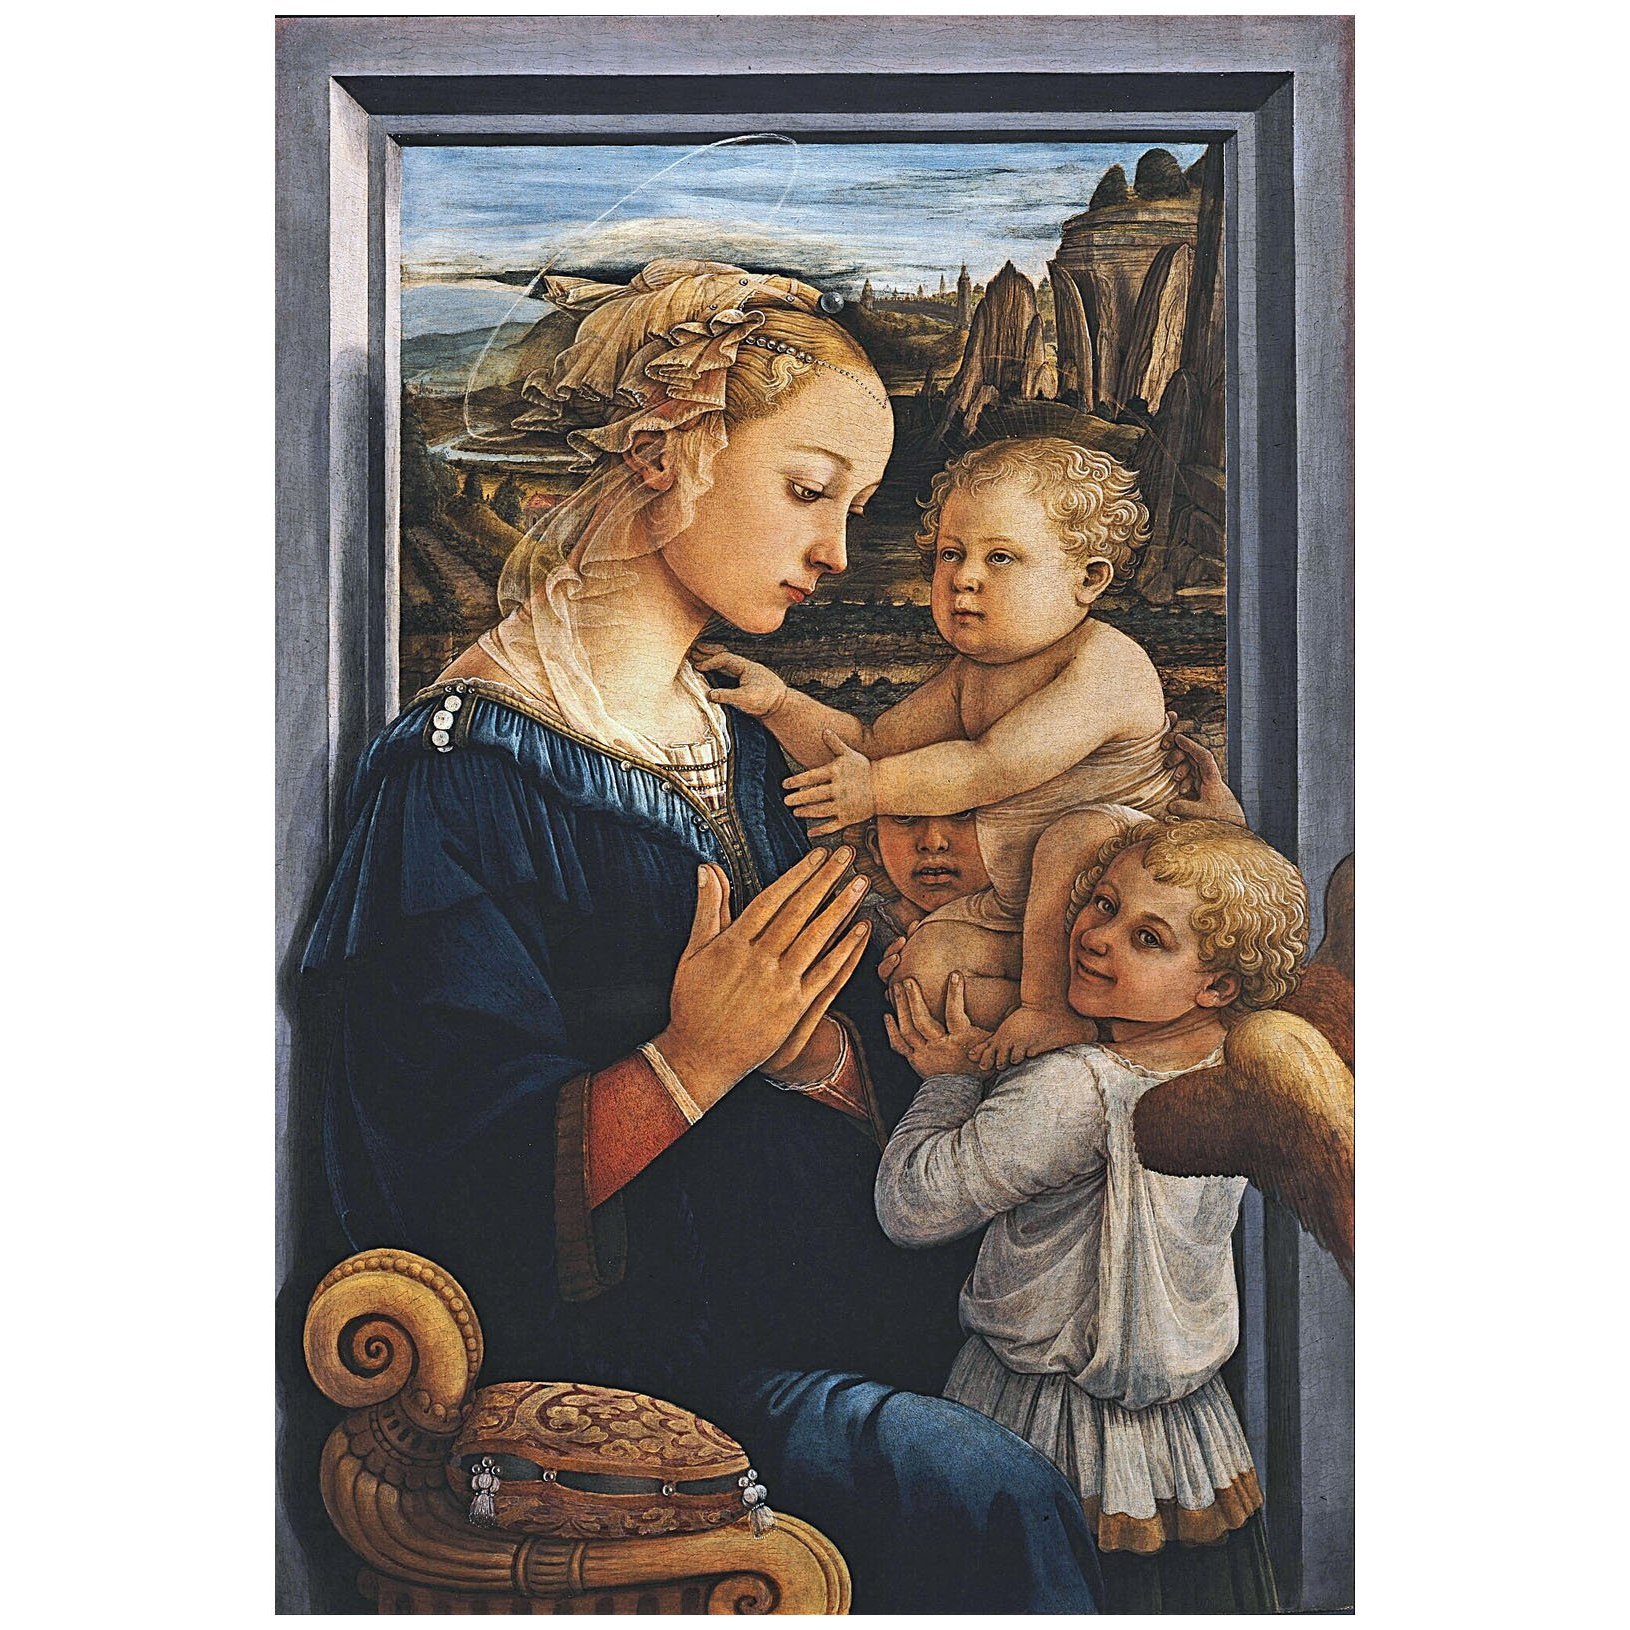 Fra Folippo Lippi. Madonna col bambino. 1460. Gallerie degli Uffizi